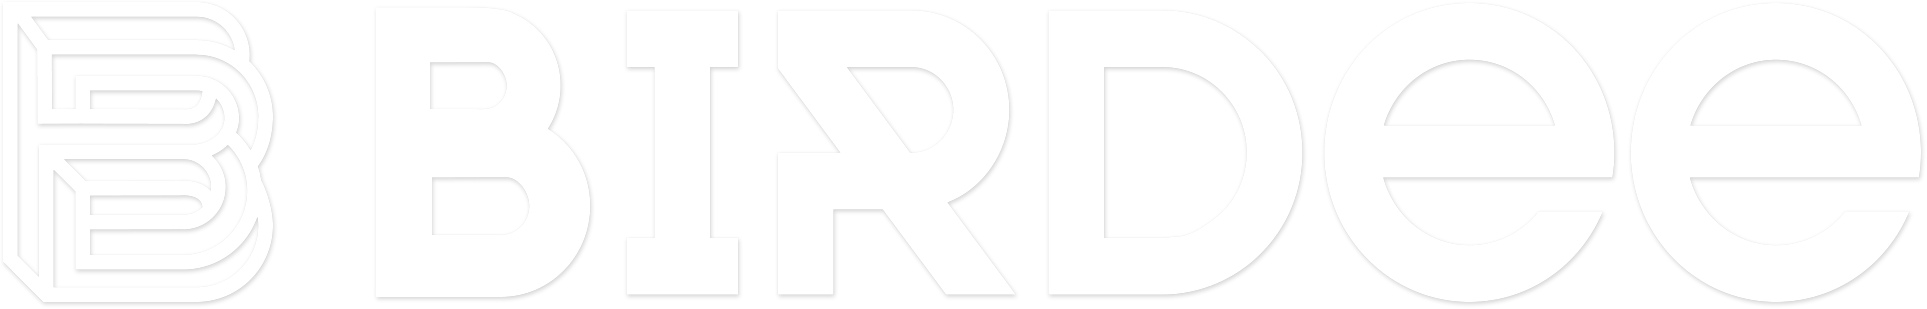 Birdee logo